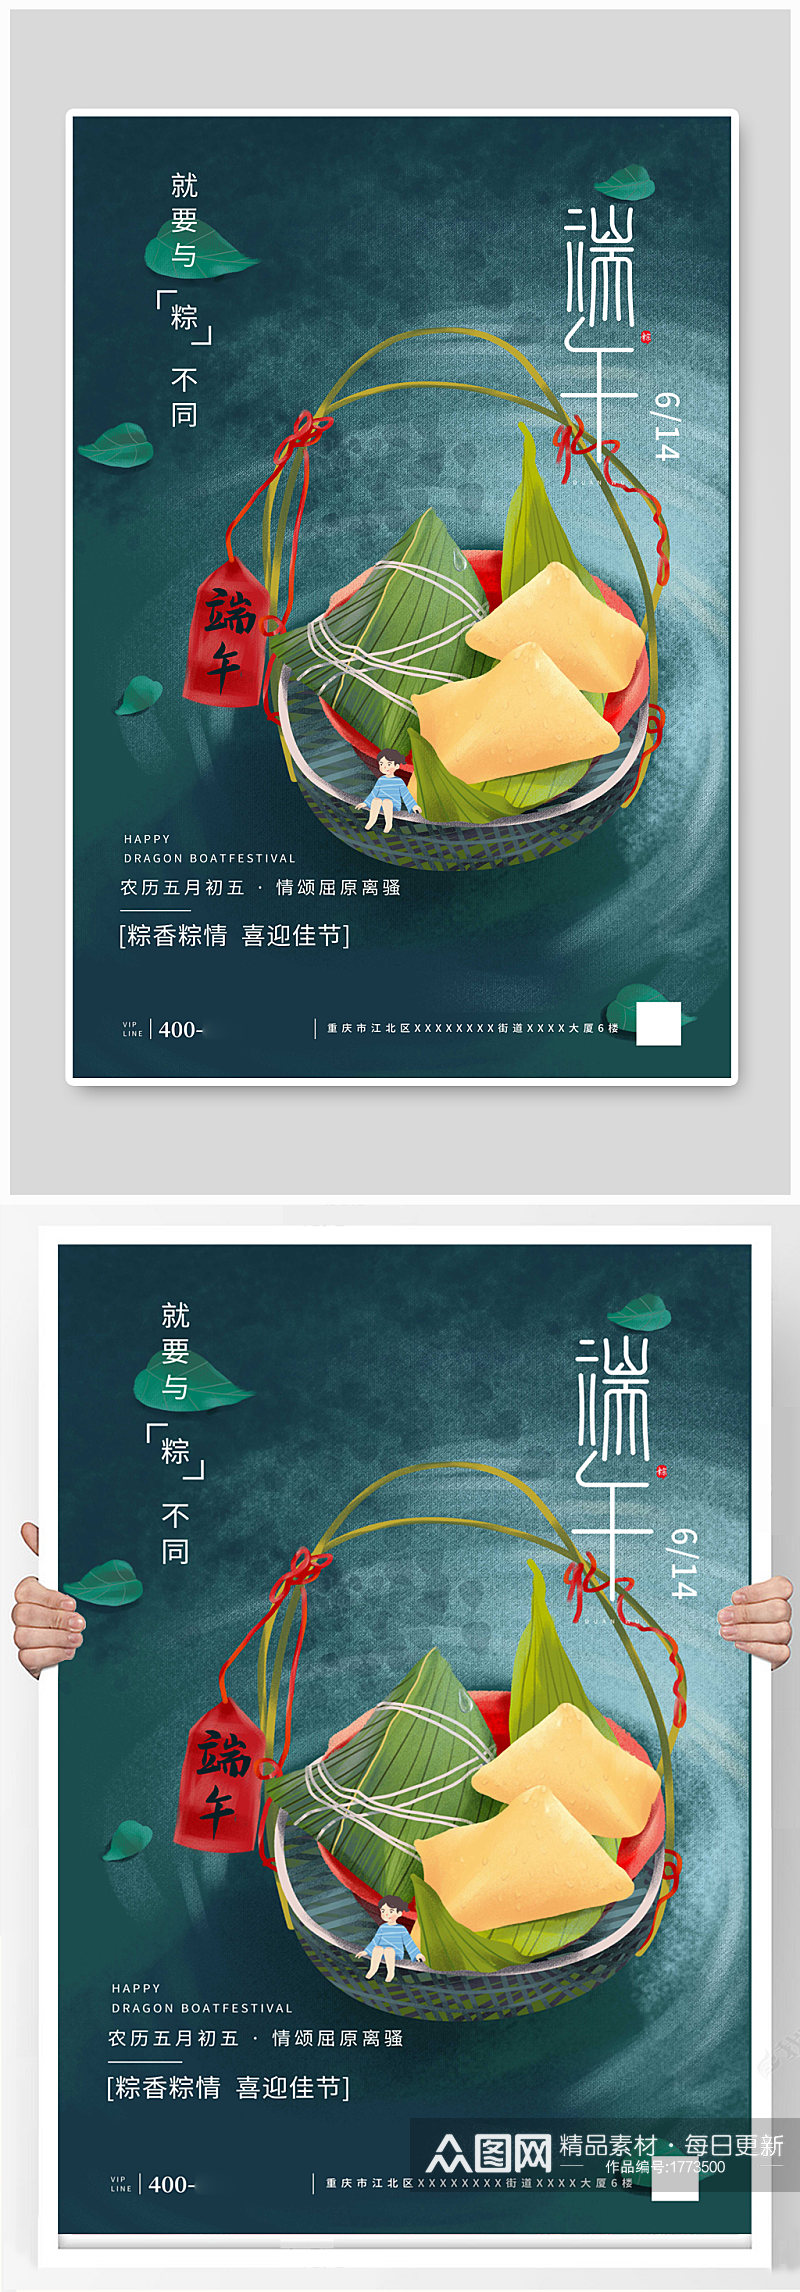 端午节包粽子插画节日宣传海报图片大全素材